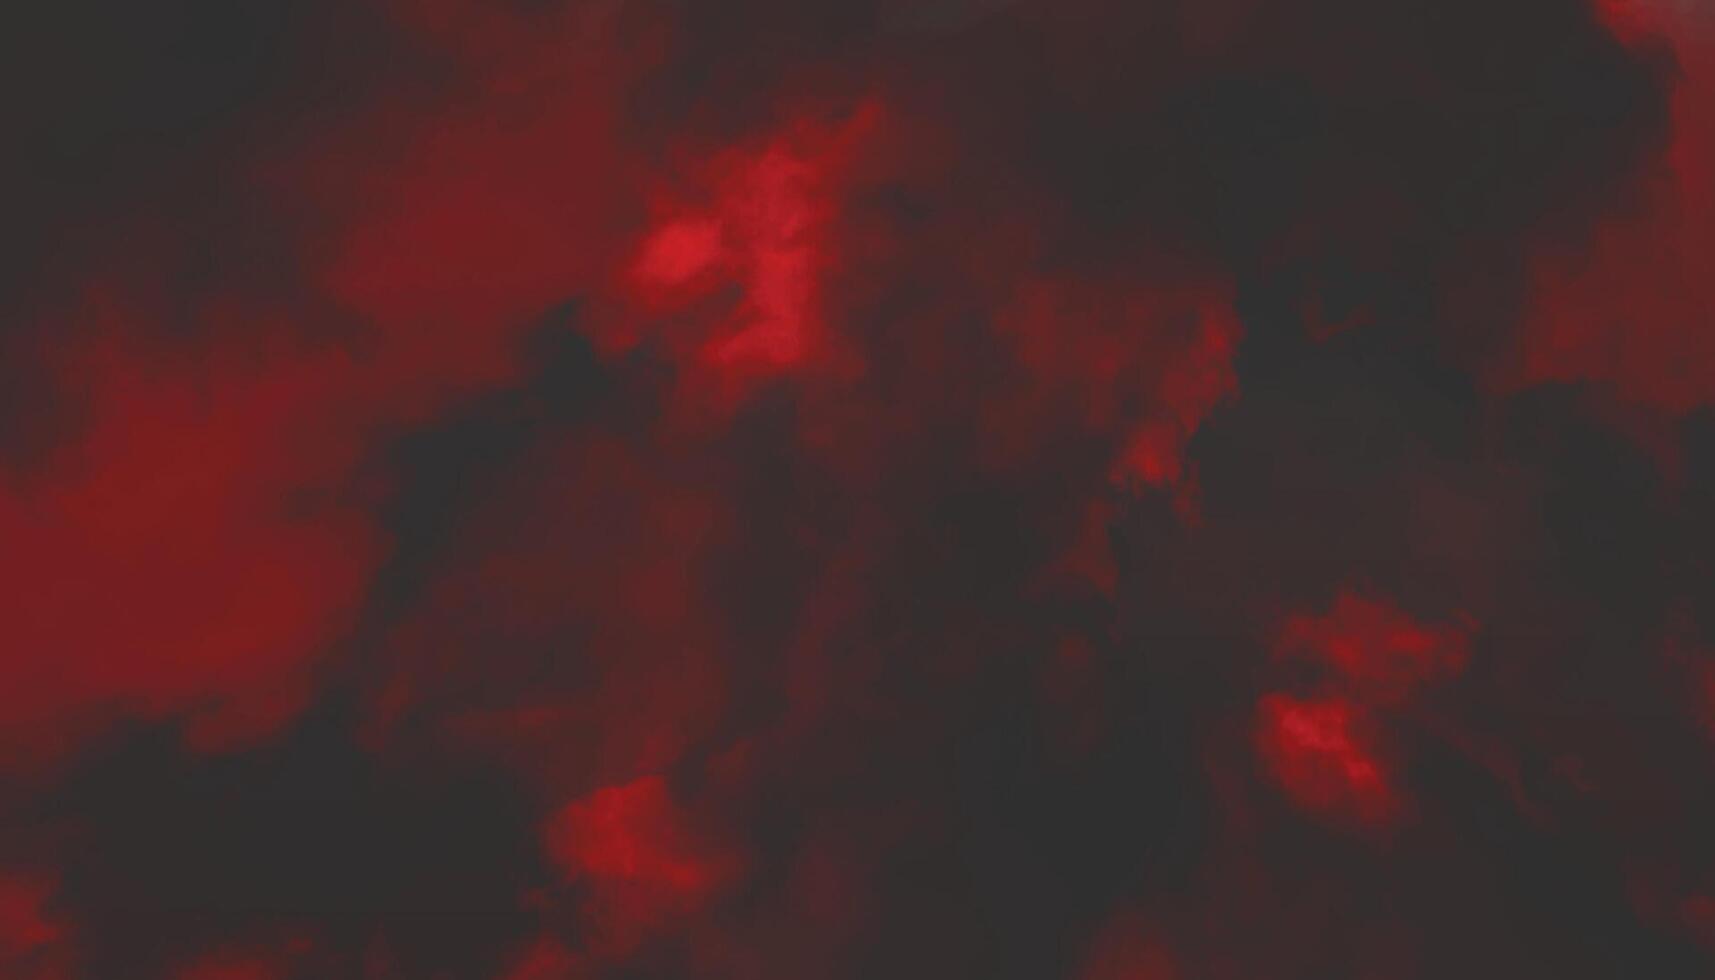 mörk röd bakgrund. röd svart vattenfärg grunge bakgrund textur vektor